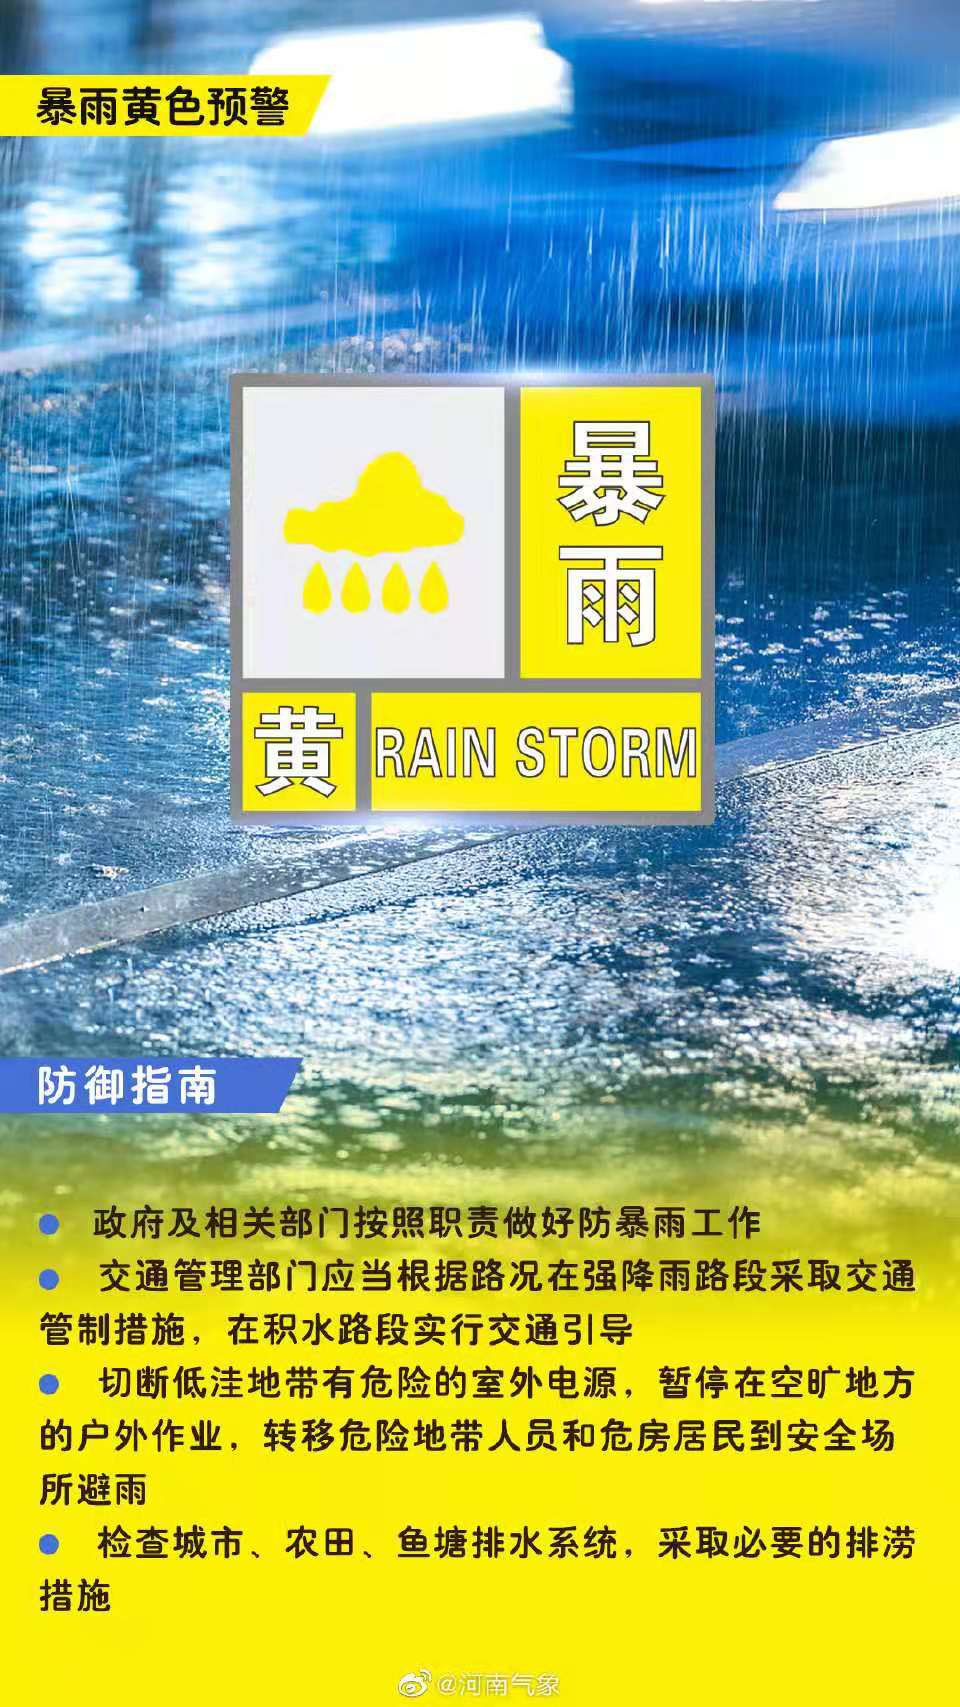 河南省气象台继续发布暴雨黄色预警